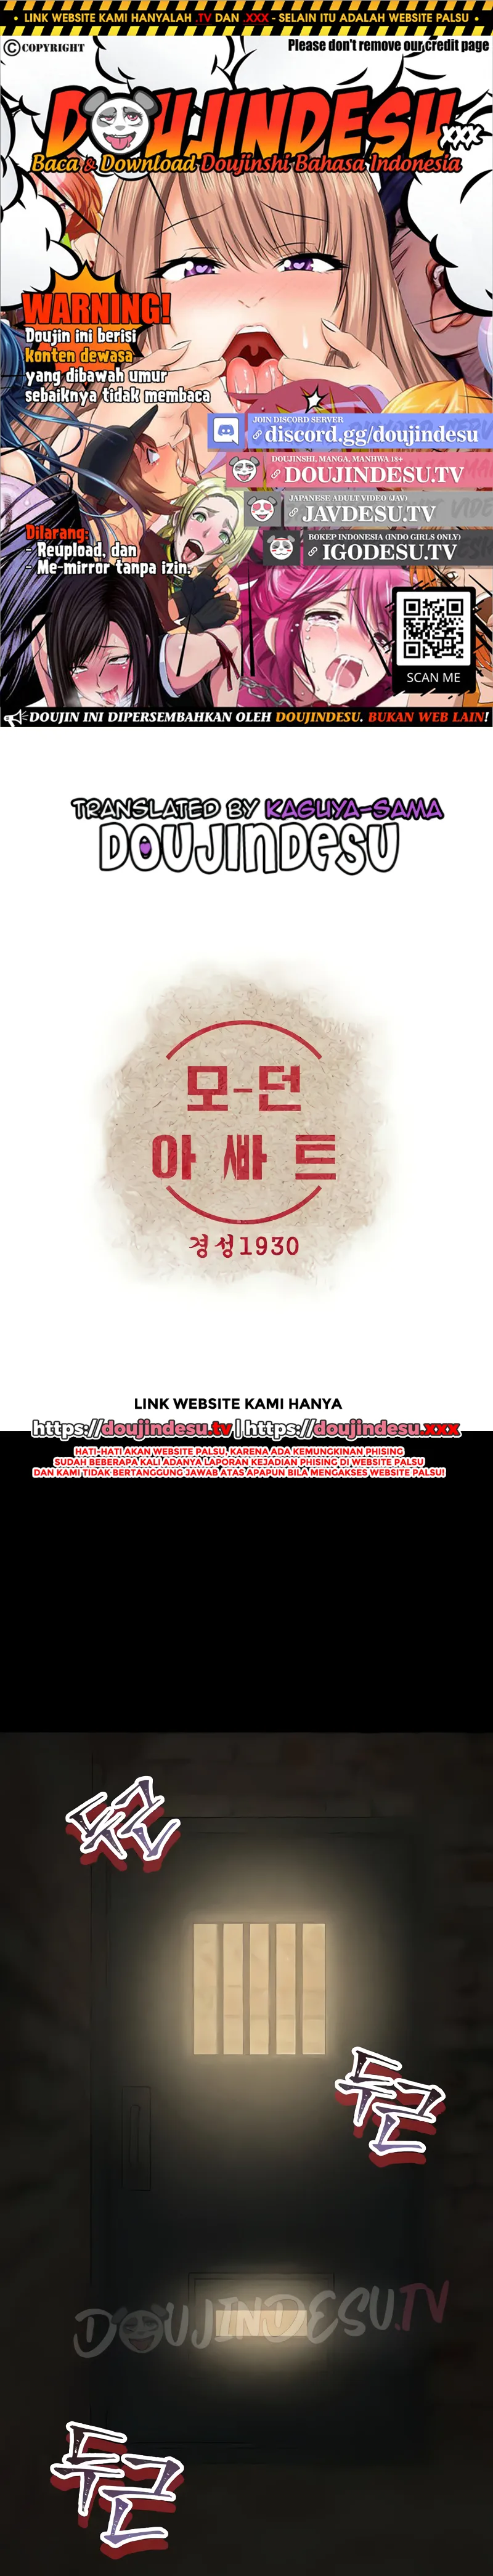 Read manhwa Modern Apartment, Gyeongseong 1930 Chapter 21 - SauceManhwa.com